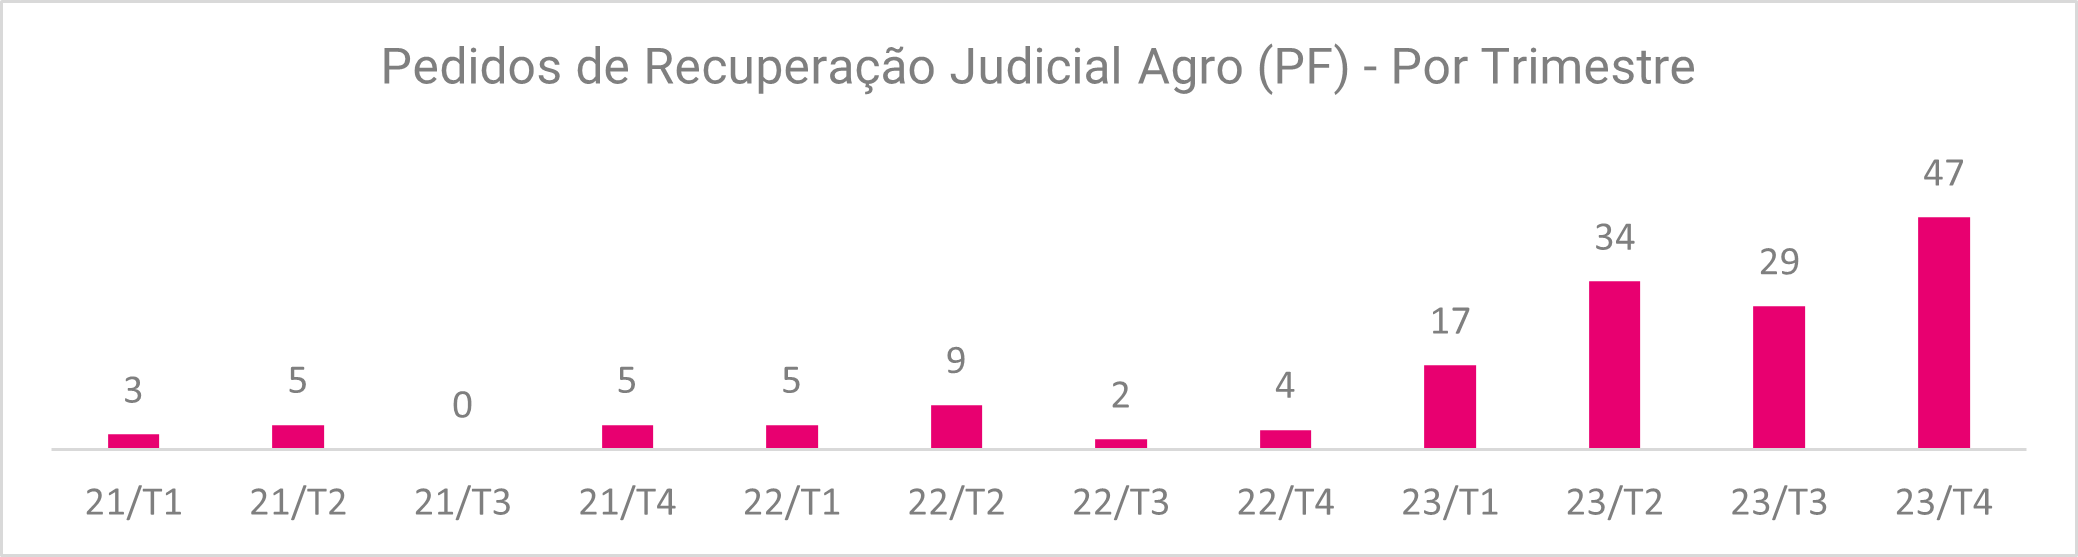 Gráfico com dados sobre pedidos de recuperação judicial de agro dividido por trimestre